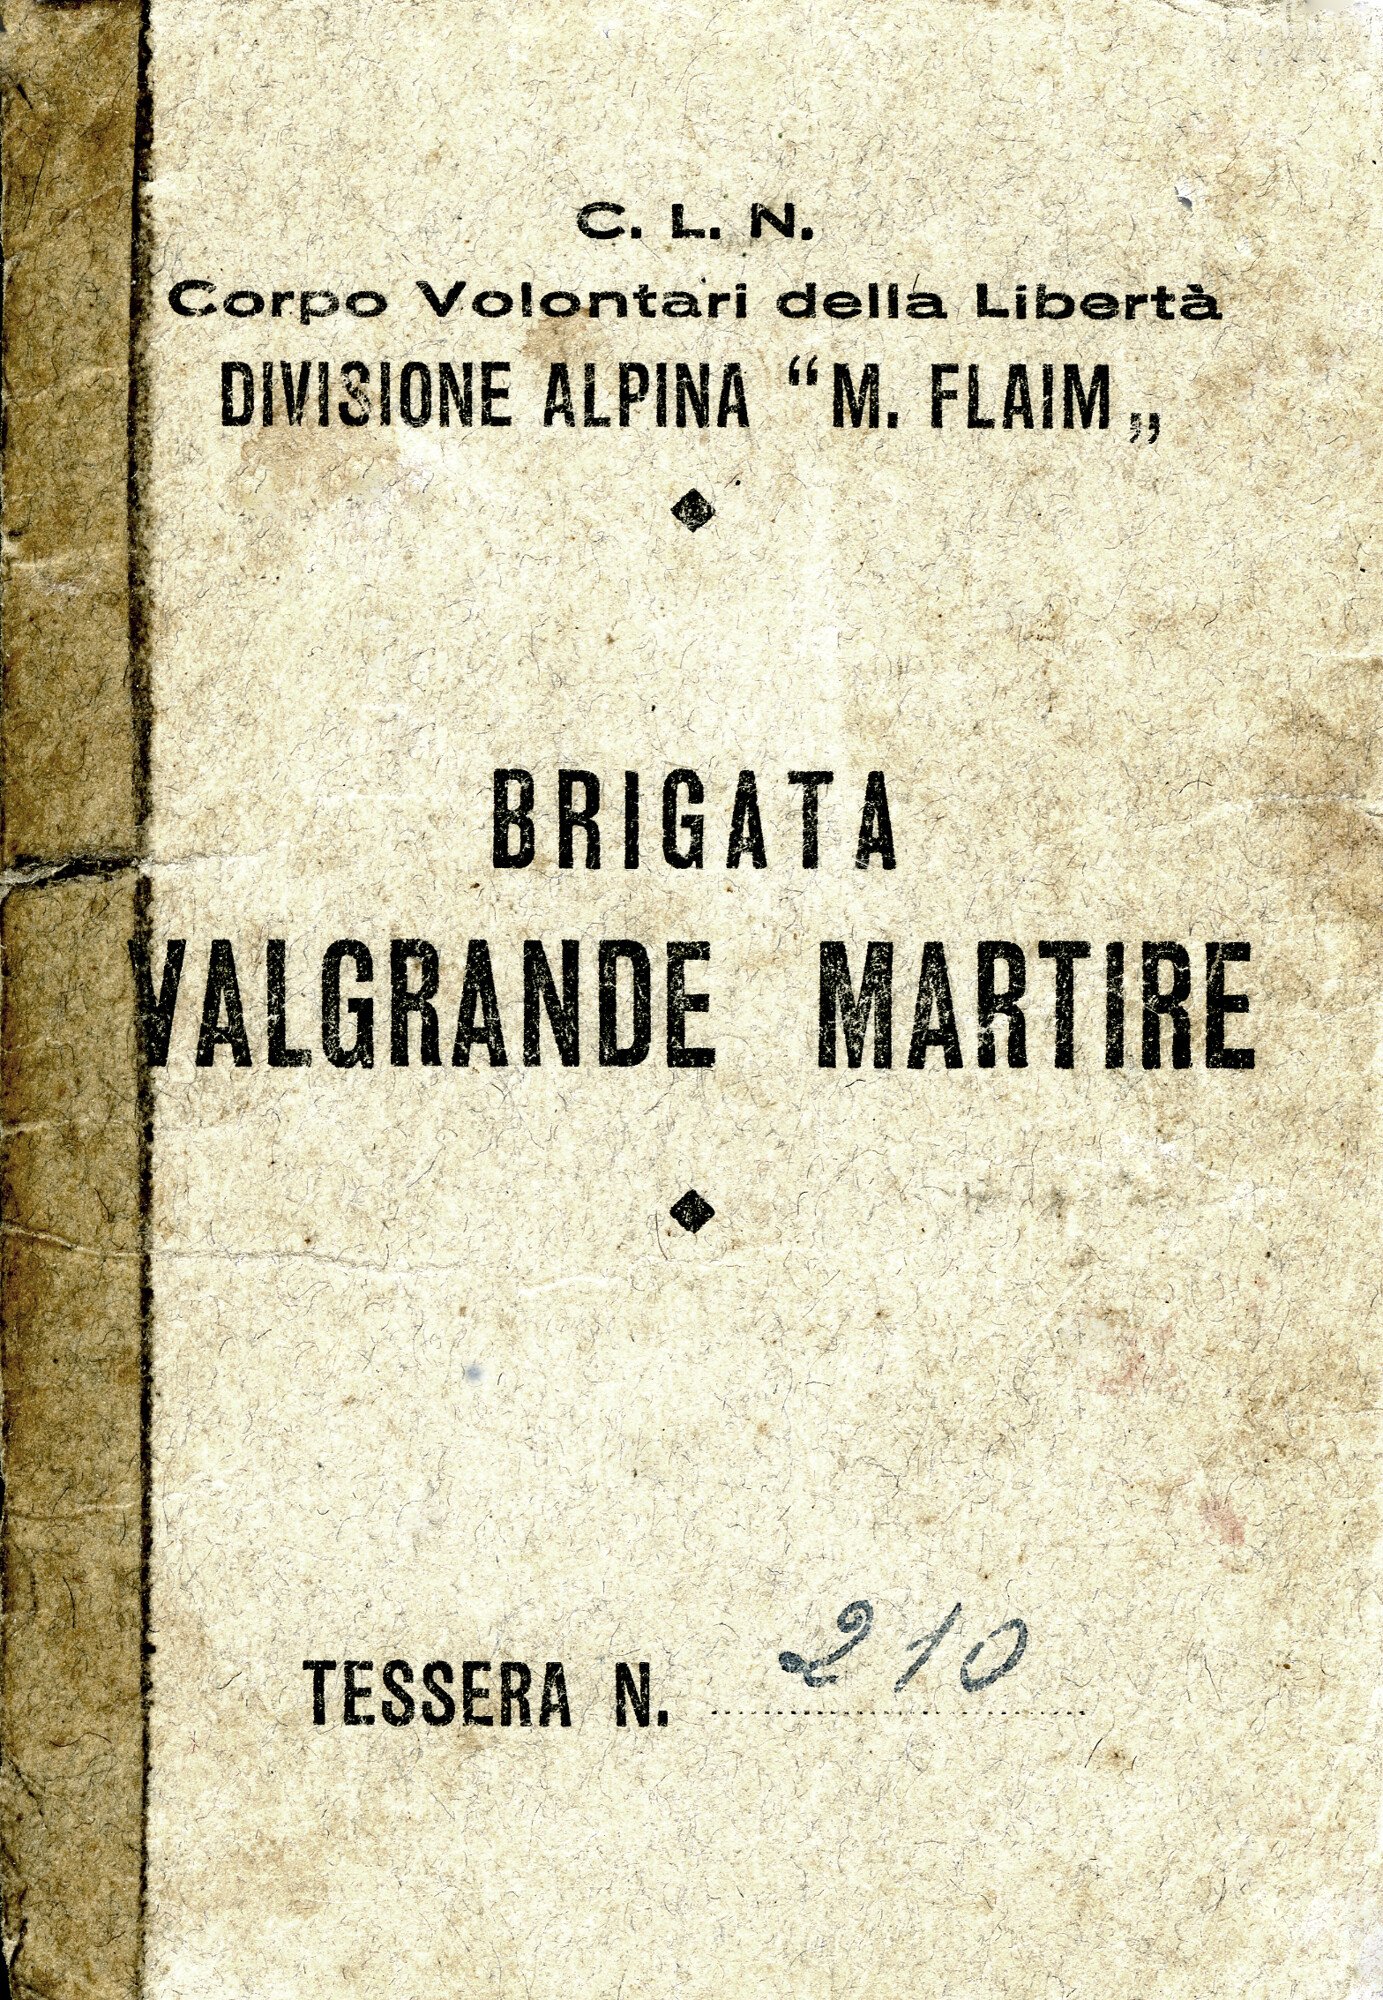 Archivio Bescapé - giuseppe-bescape-documenti-personali-da-partigiano-3.jpg